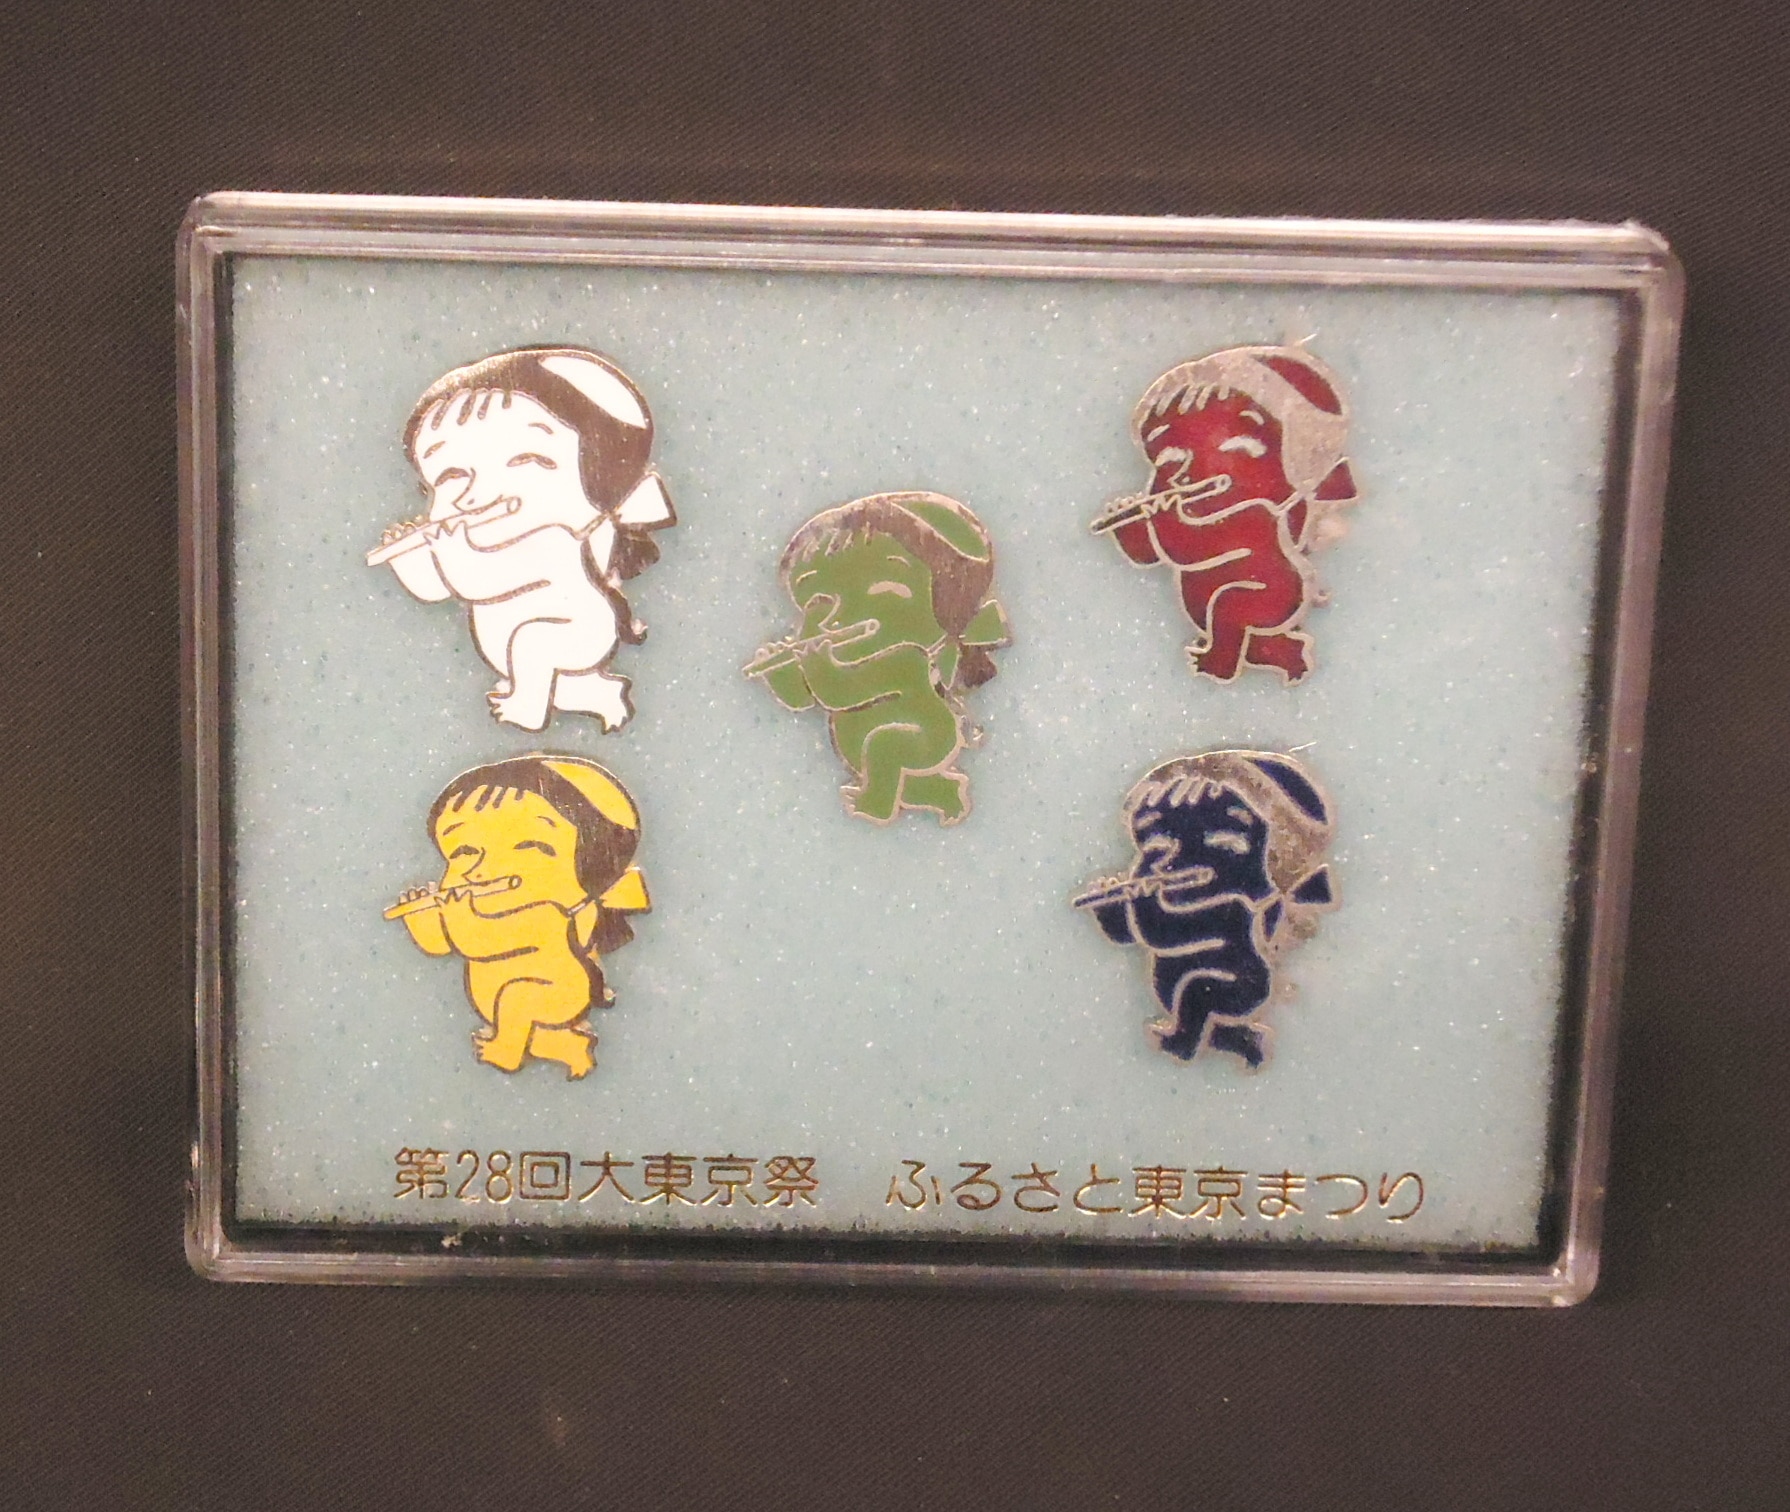 1959 大東京祭 ピンバッジ 記念徽章 初代 カッパ 河童 清水崑 昭和レトロ - コレクション